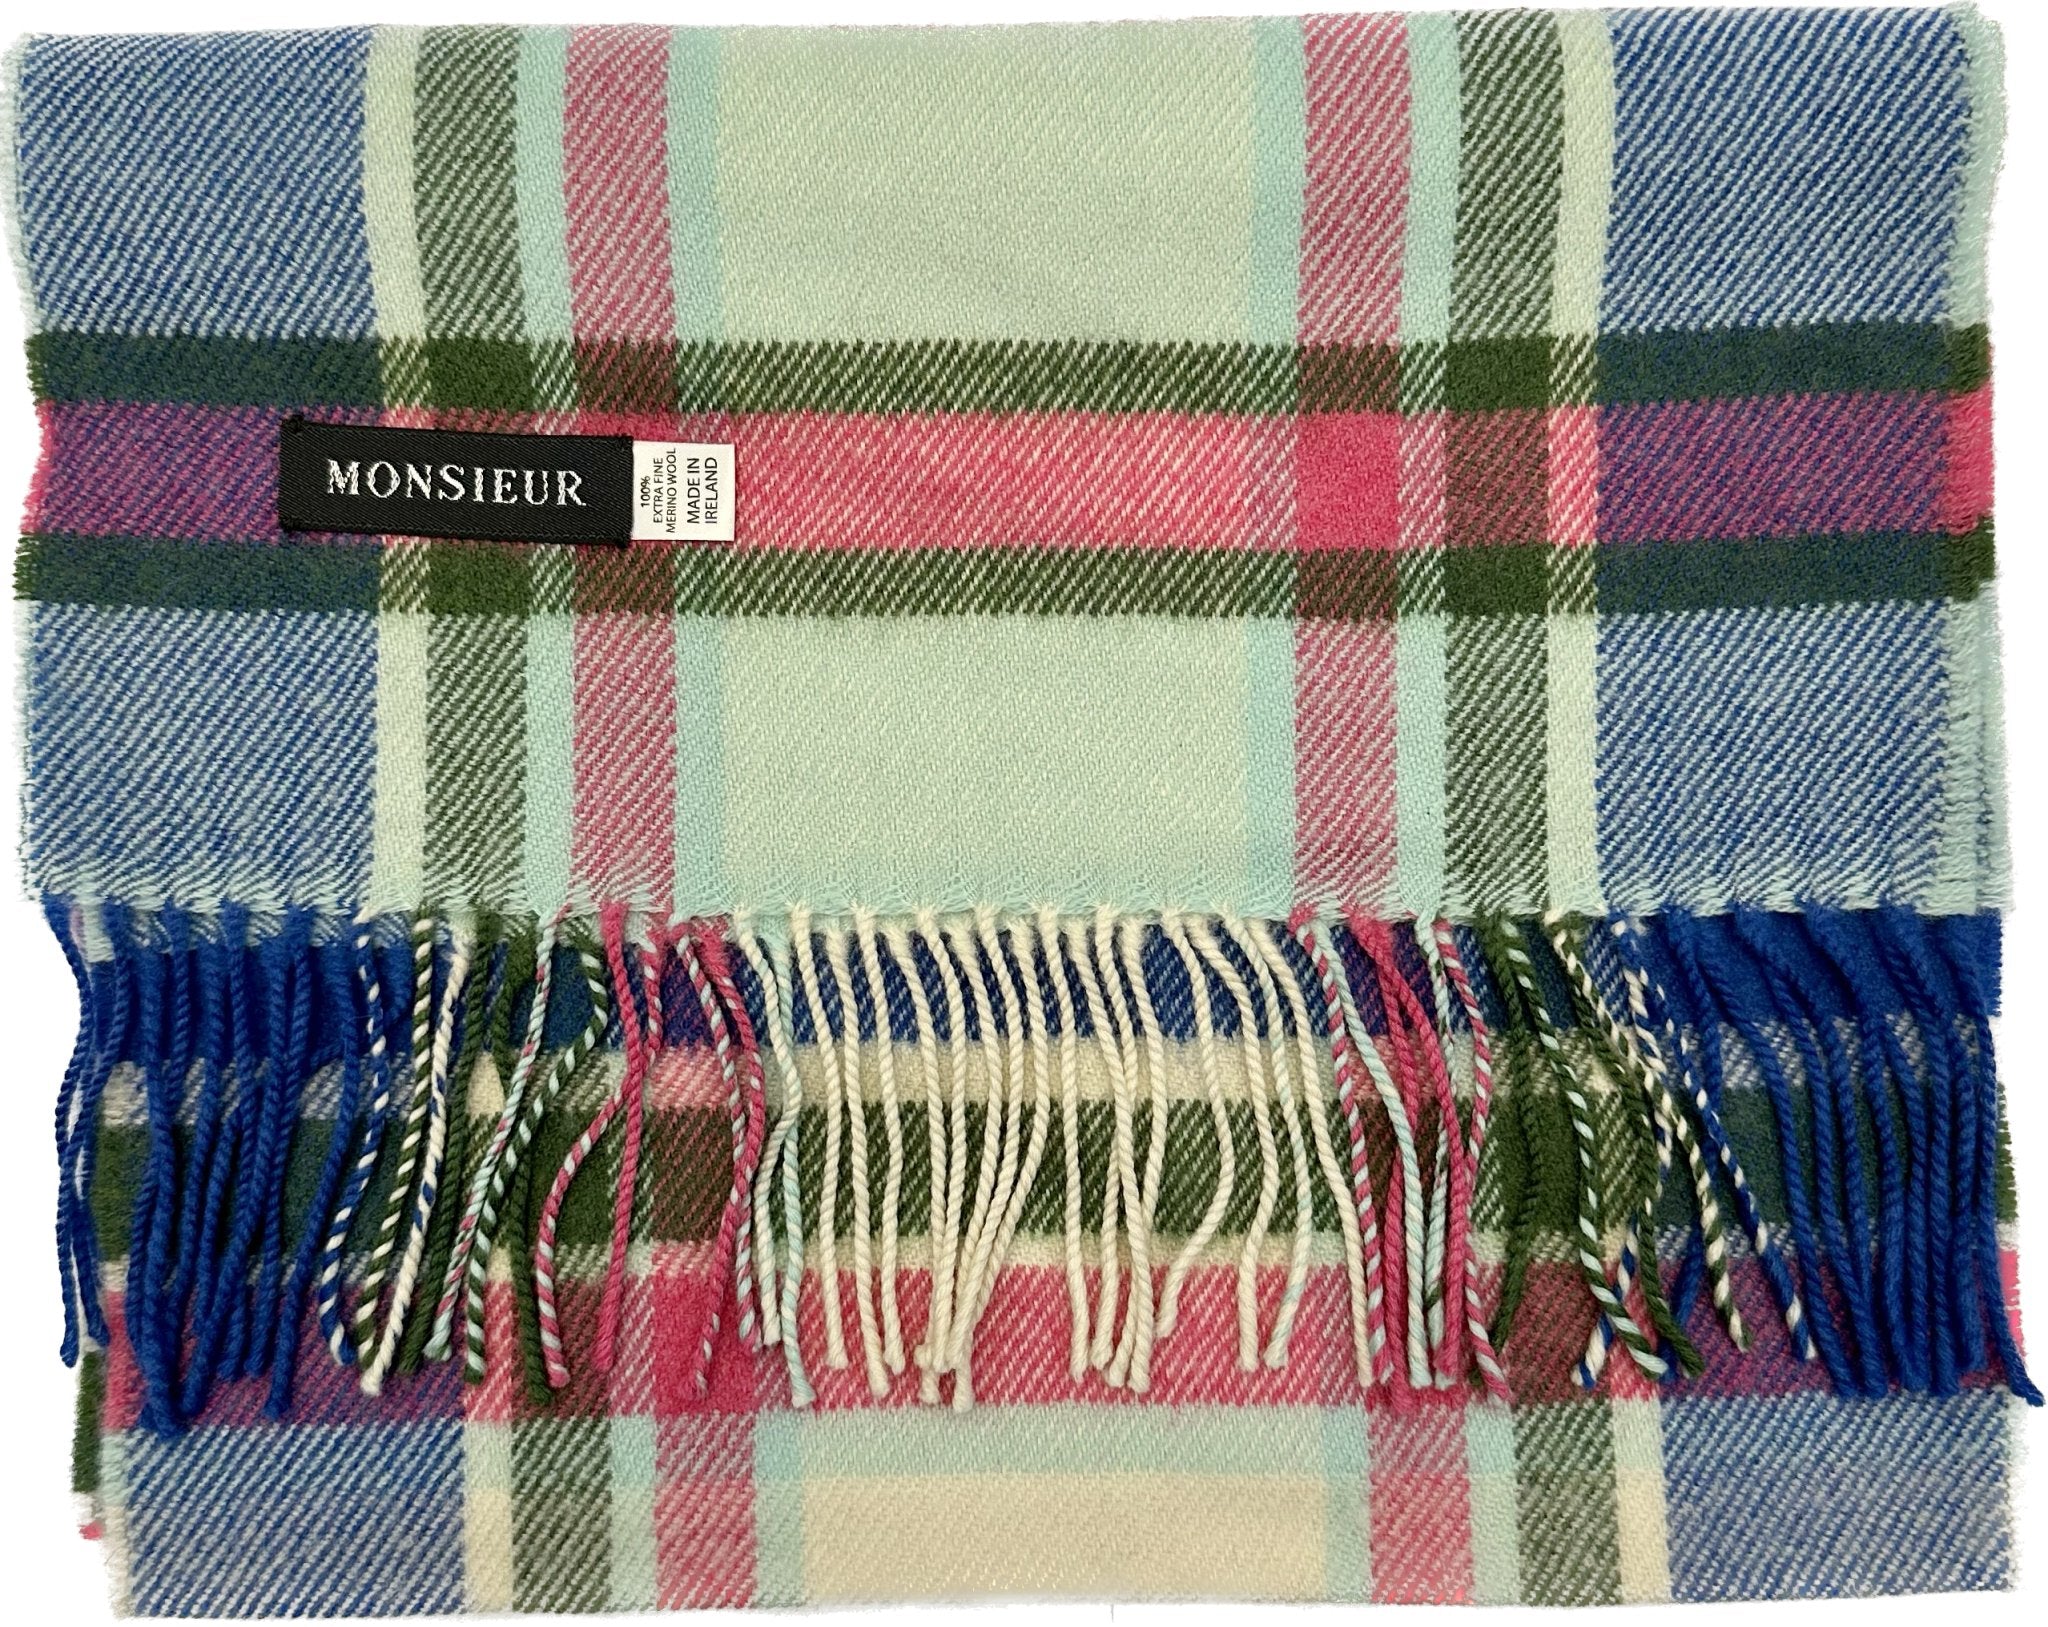 Sciarpa check luxury wool verde blu royal rosa Monsieur - MONSIEUR